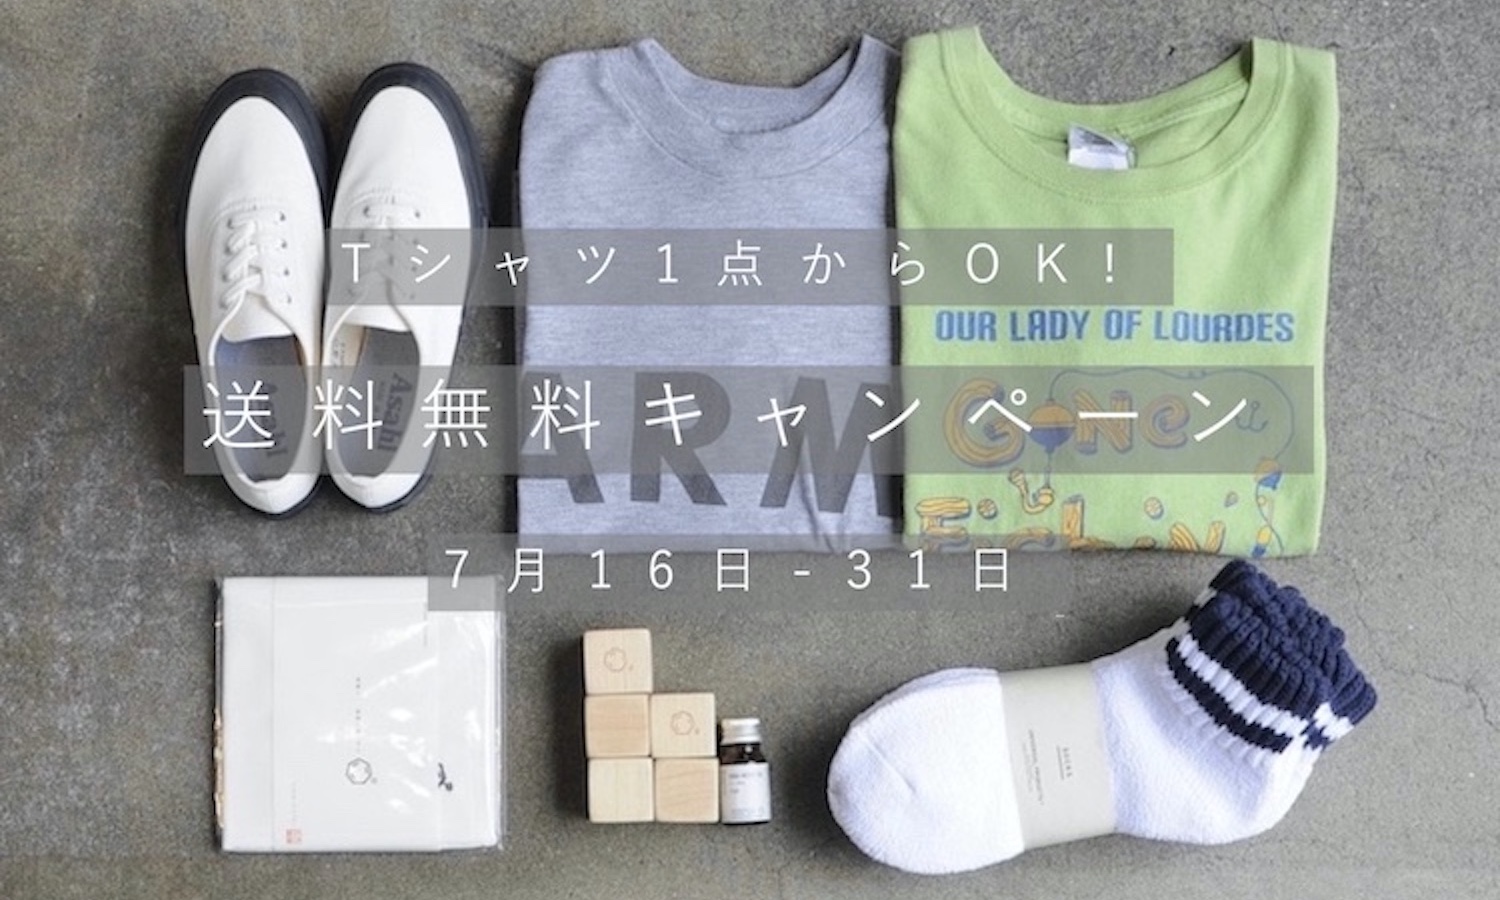 Tシャツ1枚でもOK! 　7月16日(土)-7月31日(日)まで、送料無料キャンペーン開催!